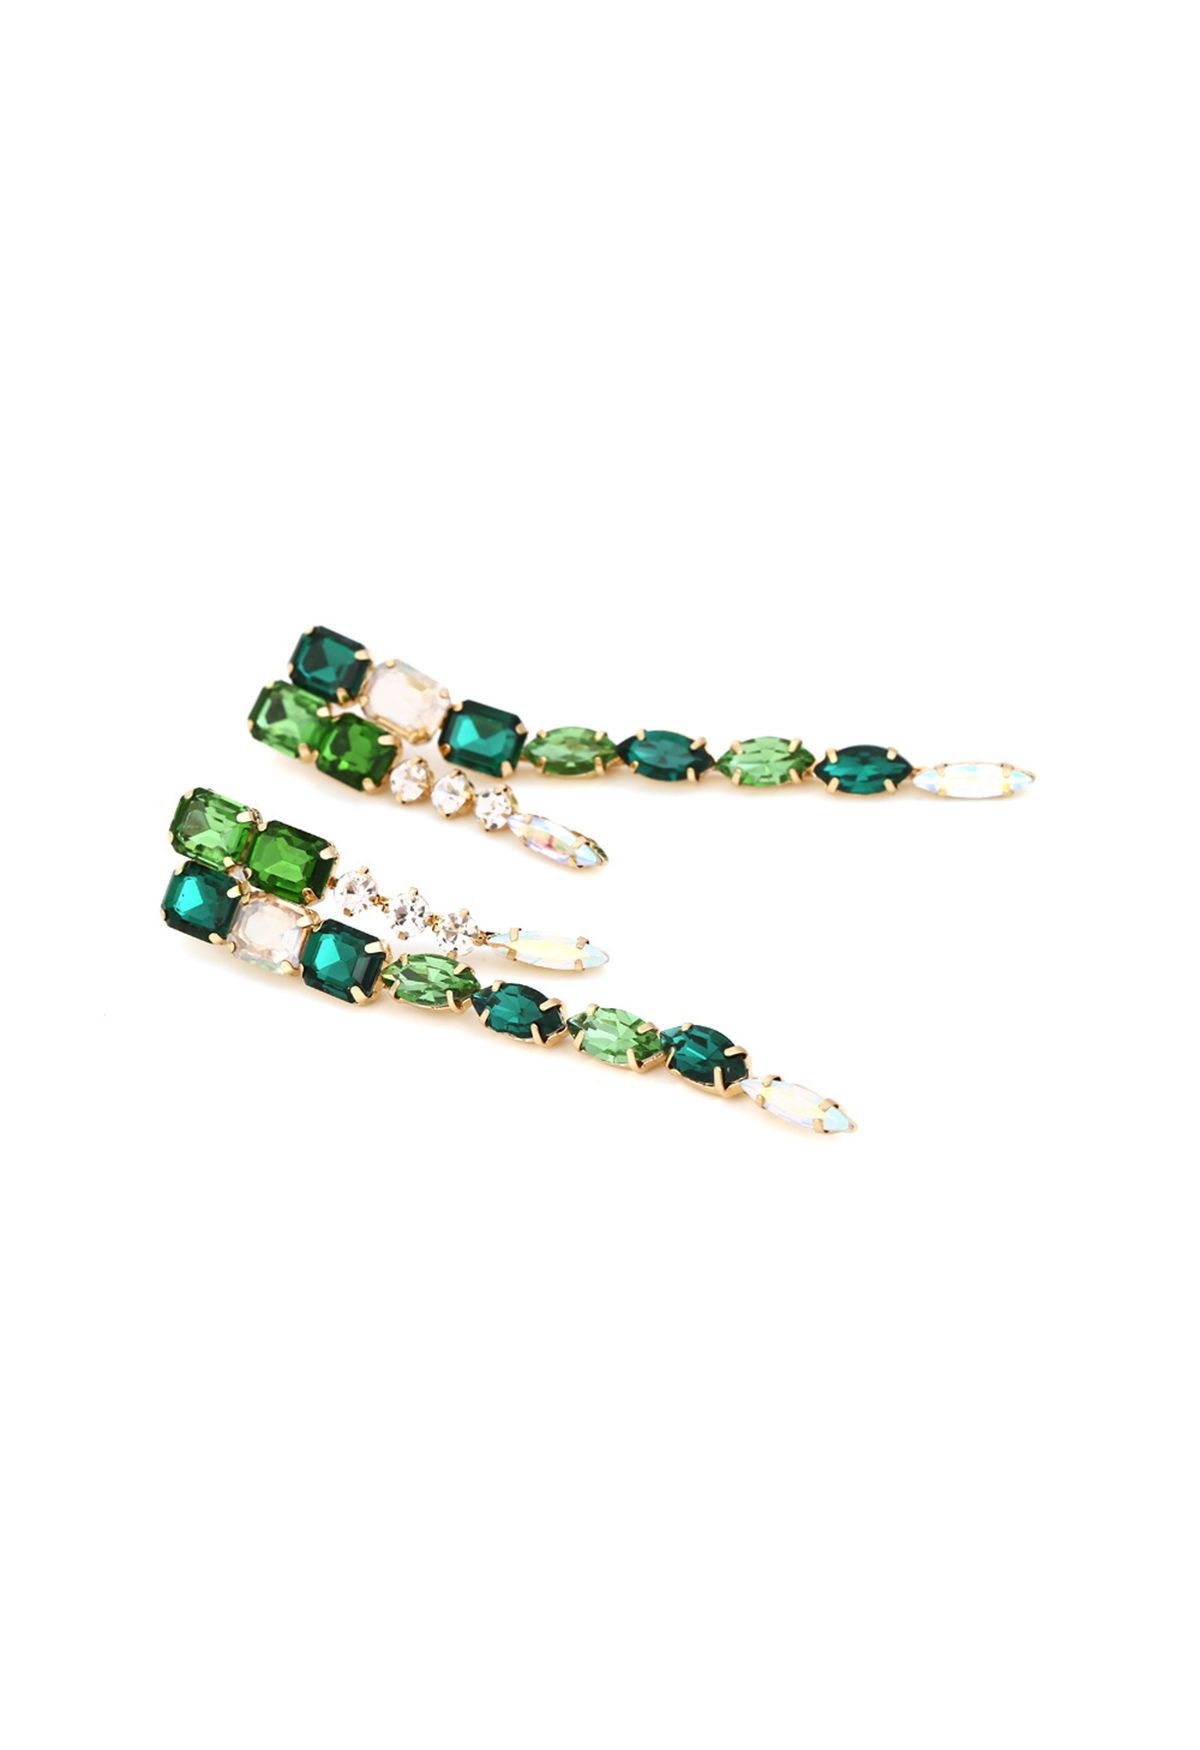 Orecchini pendenti lunghi con gemma di smeraldo di collegamento